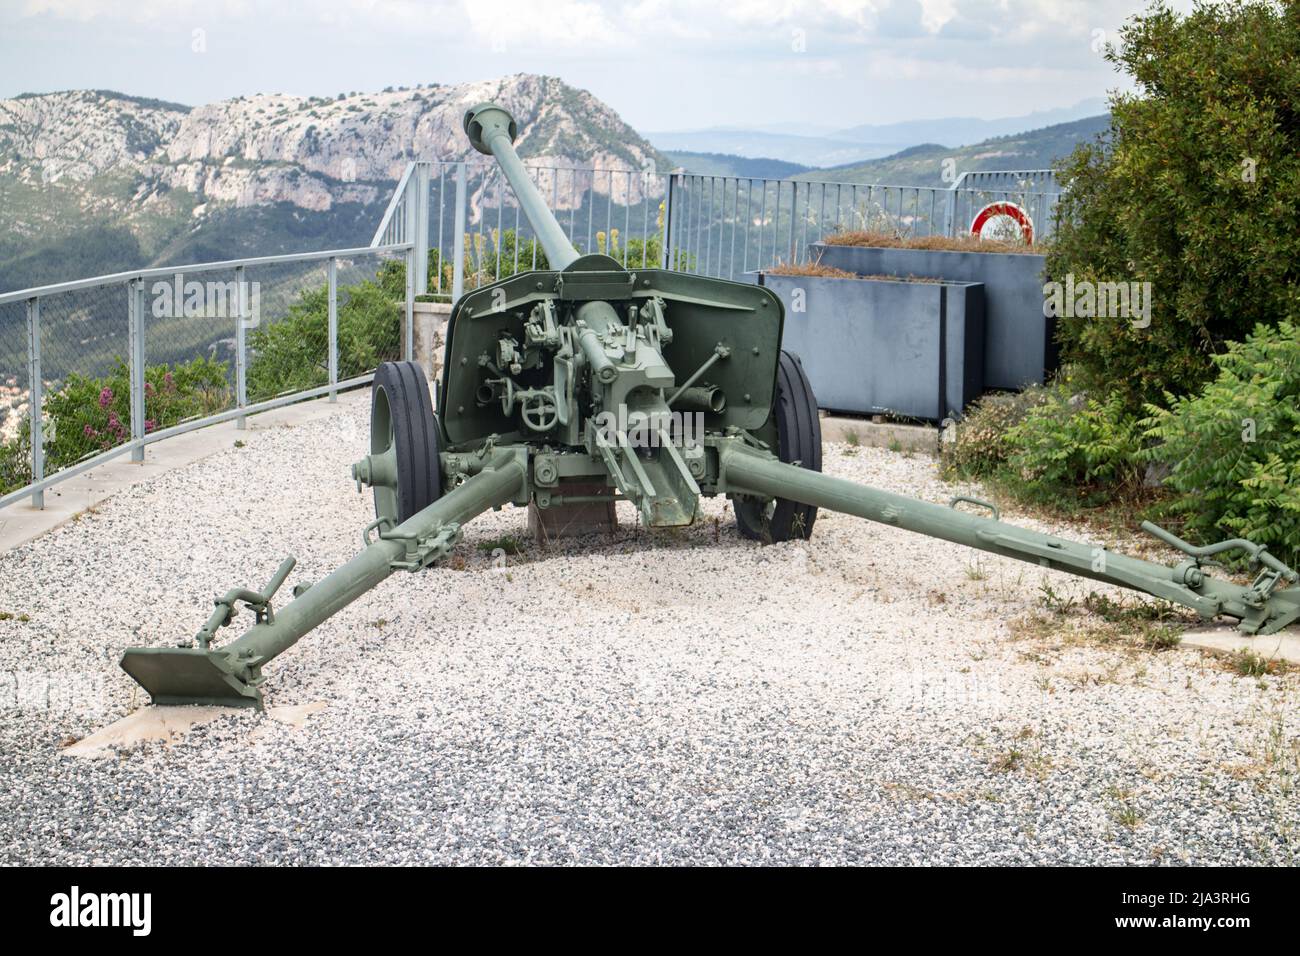 Reportage au Mont Faron (Toulon,Var,Francia) Memorial du débarquement Allié - sbarco delle forze alleate da ago 15,1944 : pistola anticarro tedesca PAK 40 Foto Stock